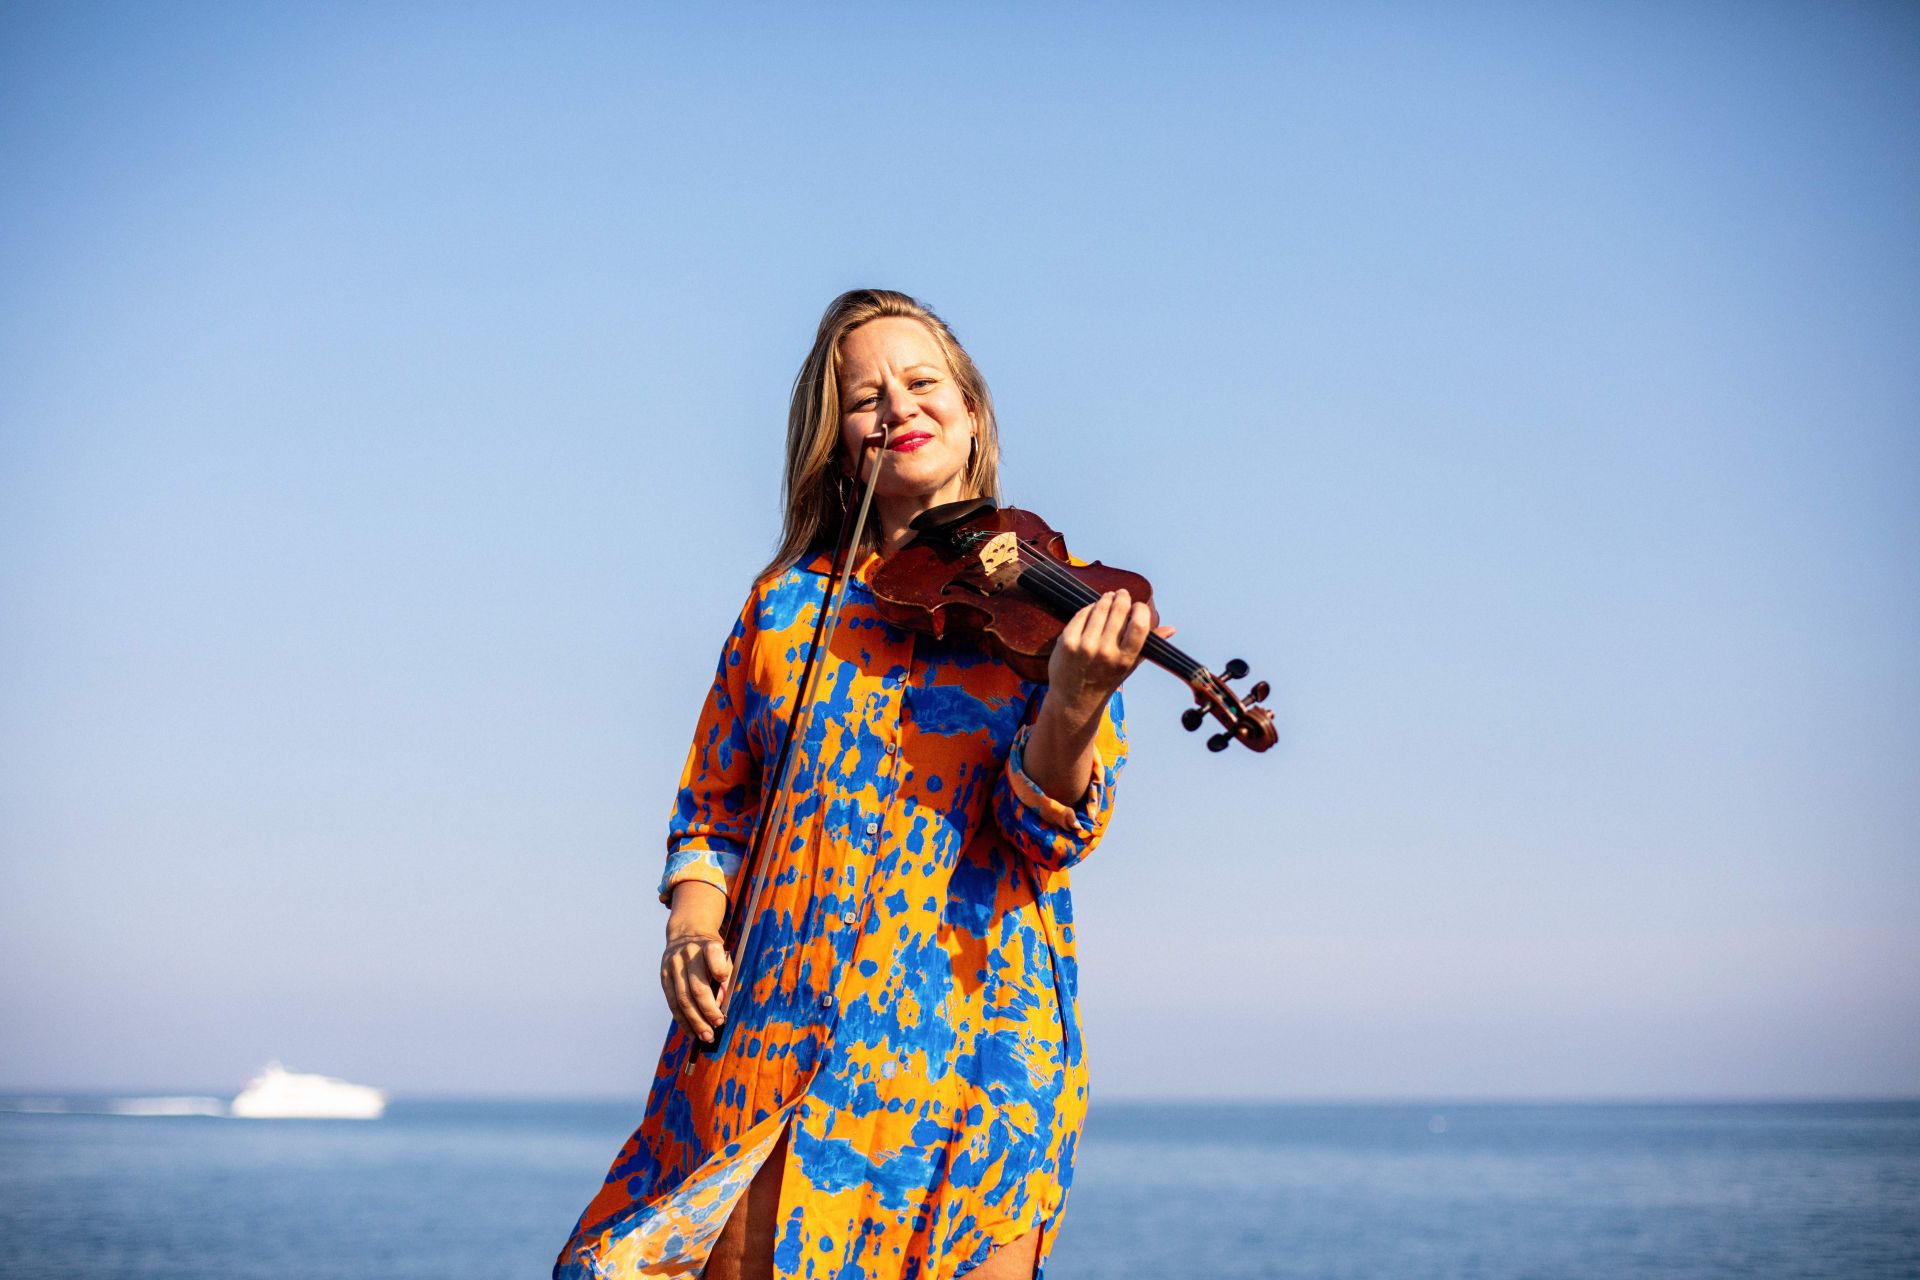 Pedagog och konstnär Lina Teir står vid en strand i en färgglad klänning. Lina håller i sin famn en fiol. Lina tittar rakt in i kameran och ler.